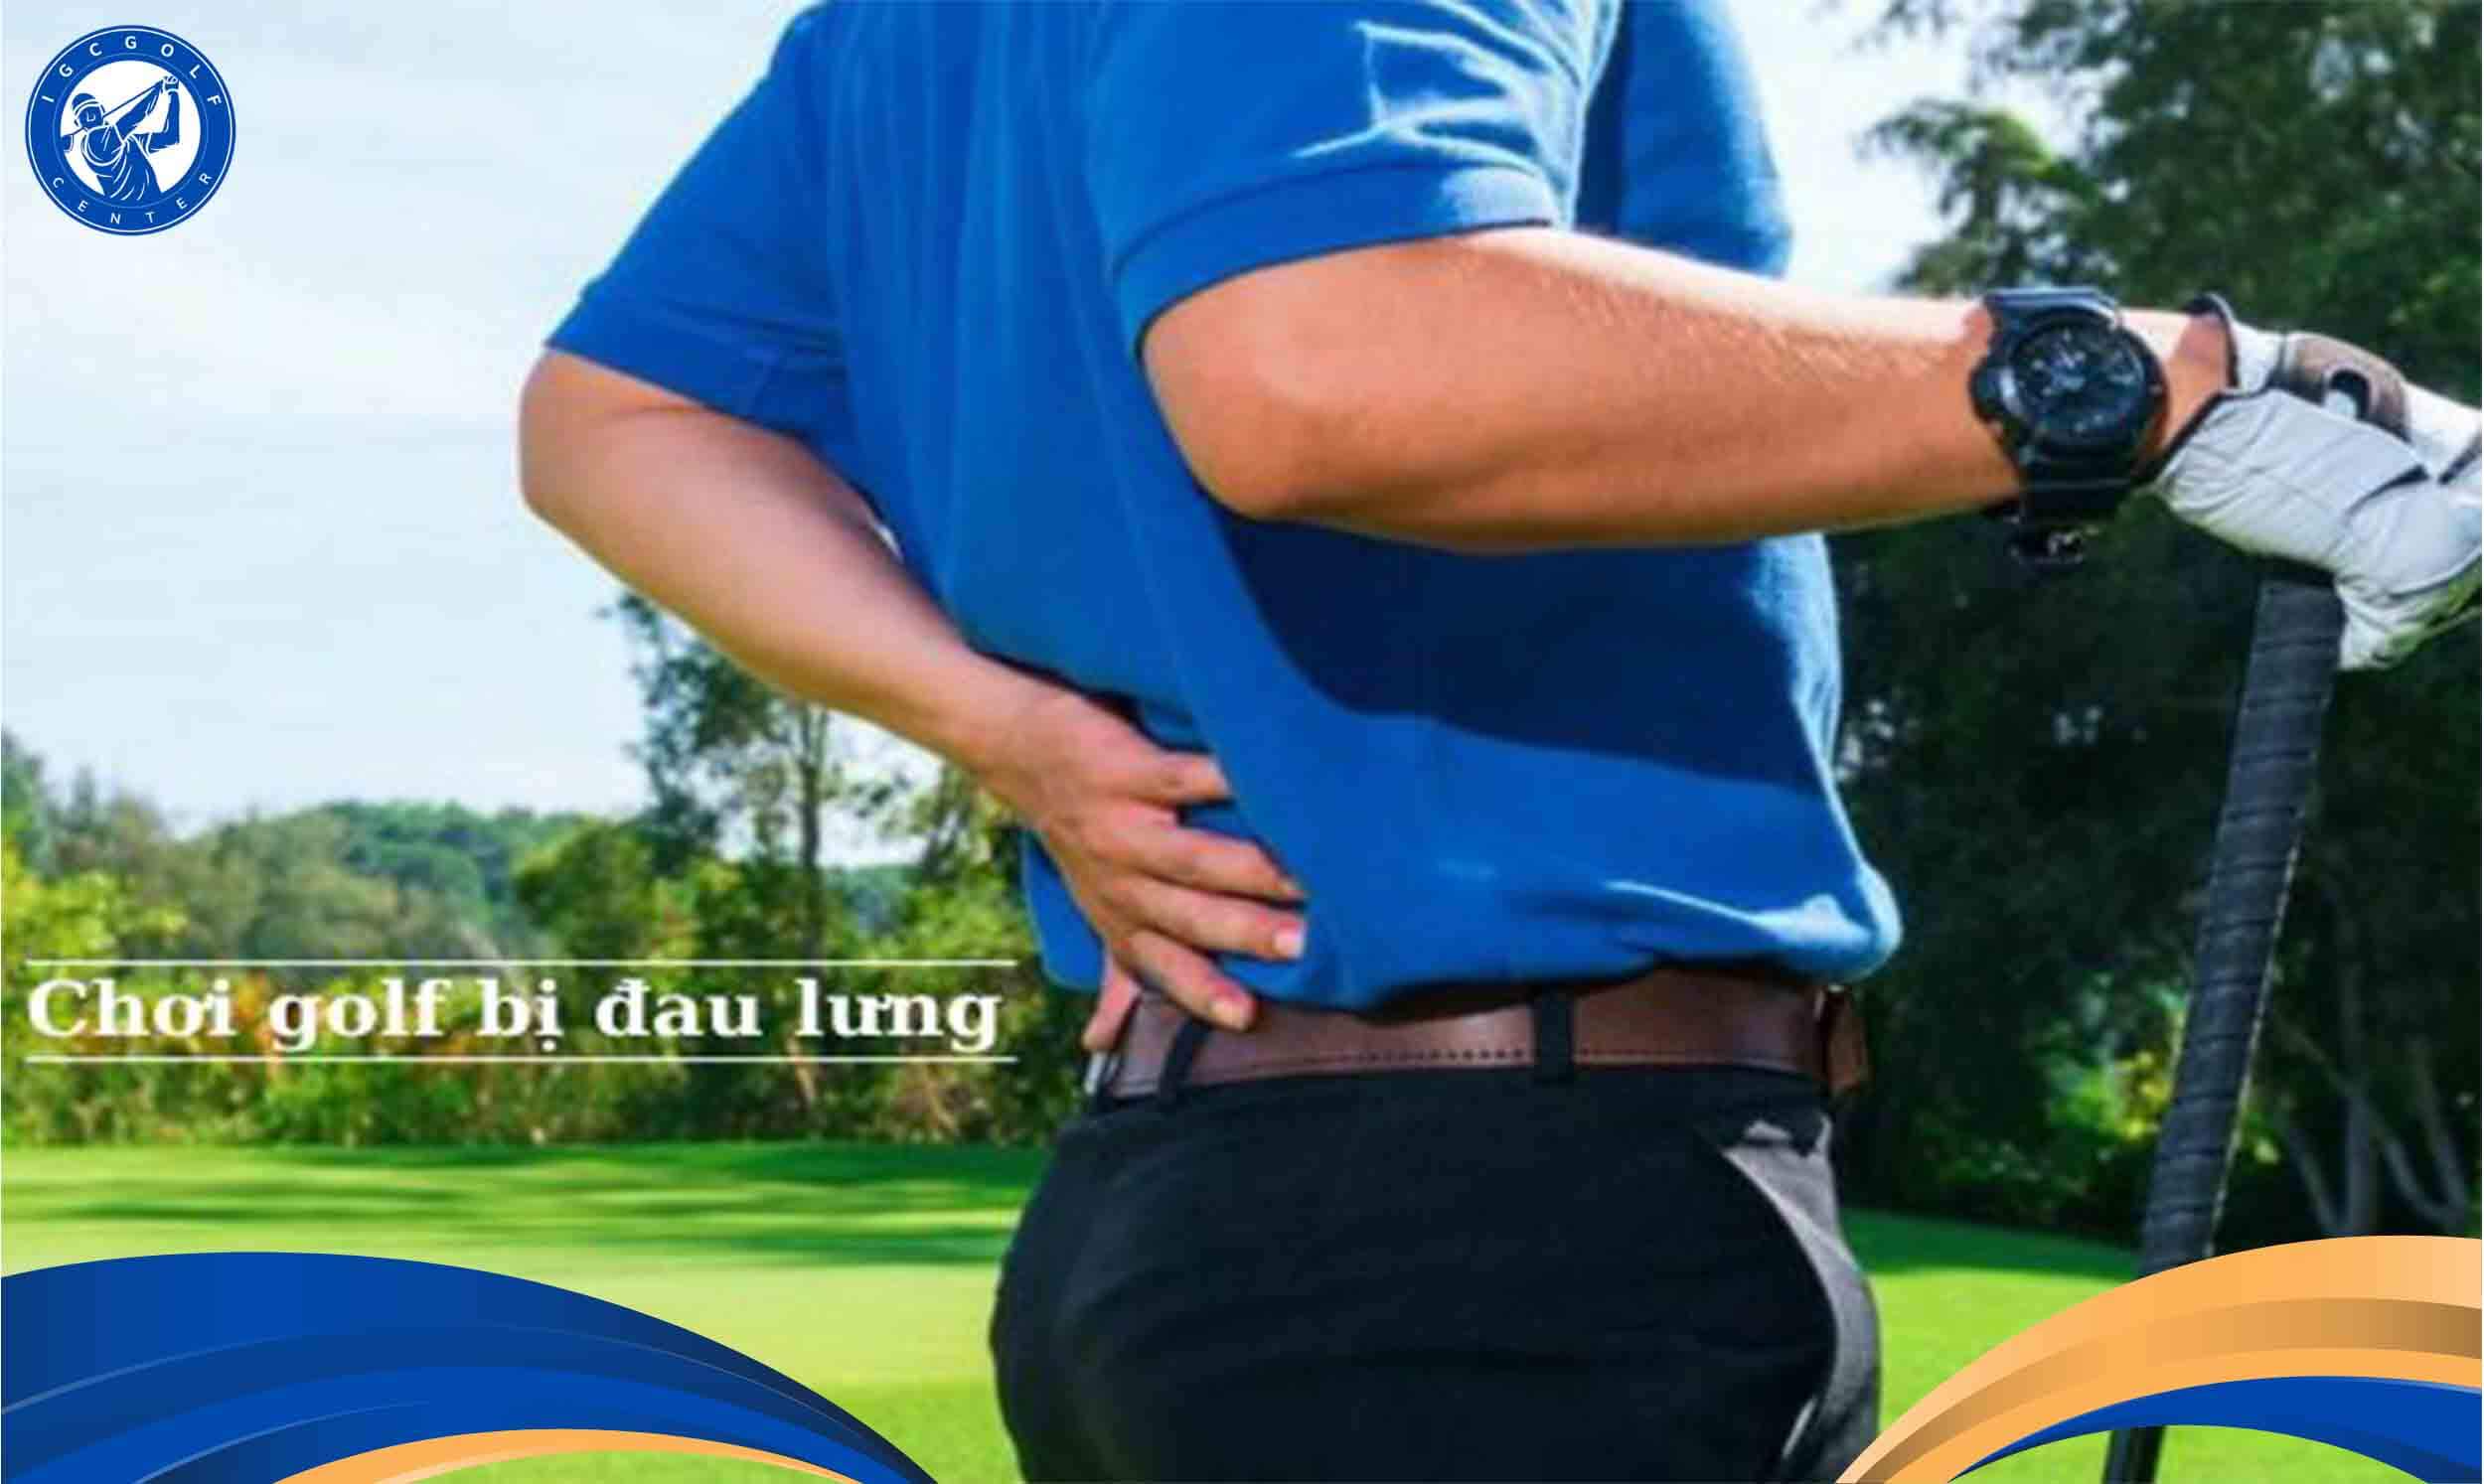 Chơi golf bị đau lưng